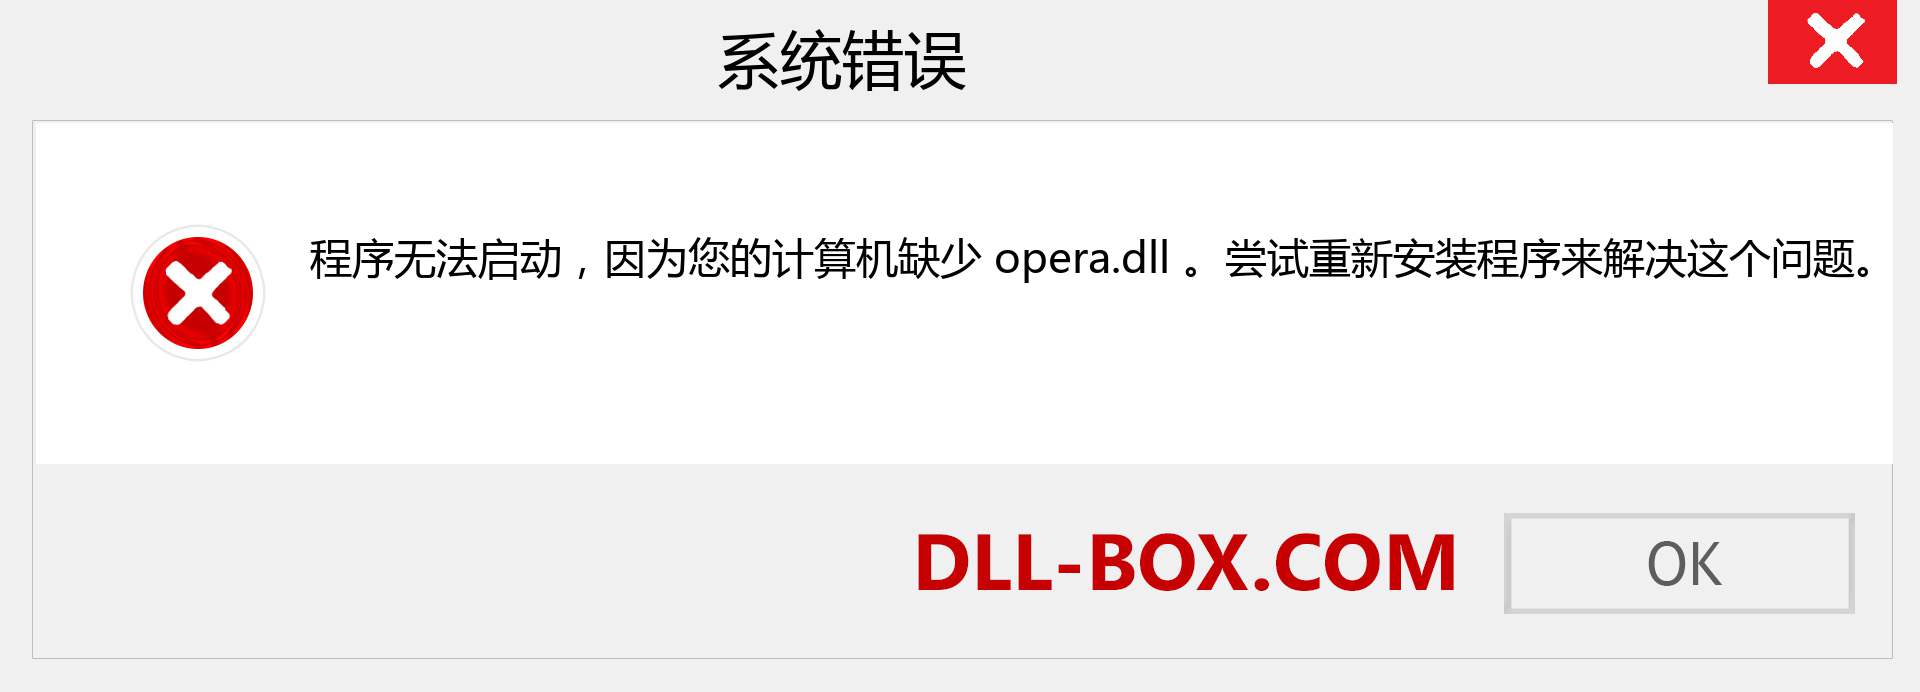 opera.dll 文件丢失？。 适用于 Windows 7、8、10 的下载 - 修复 Windows、照片、图像上的 opera dll 丢失错误